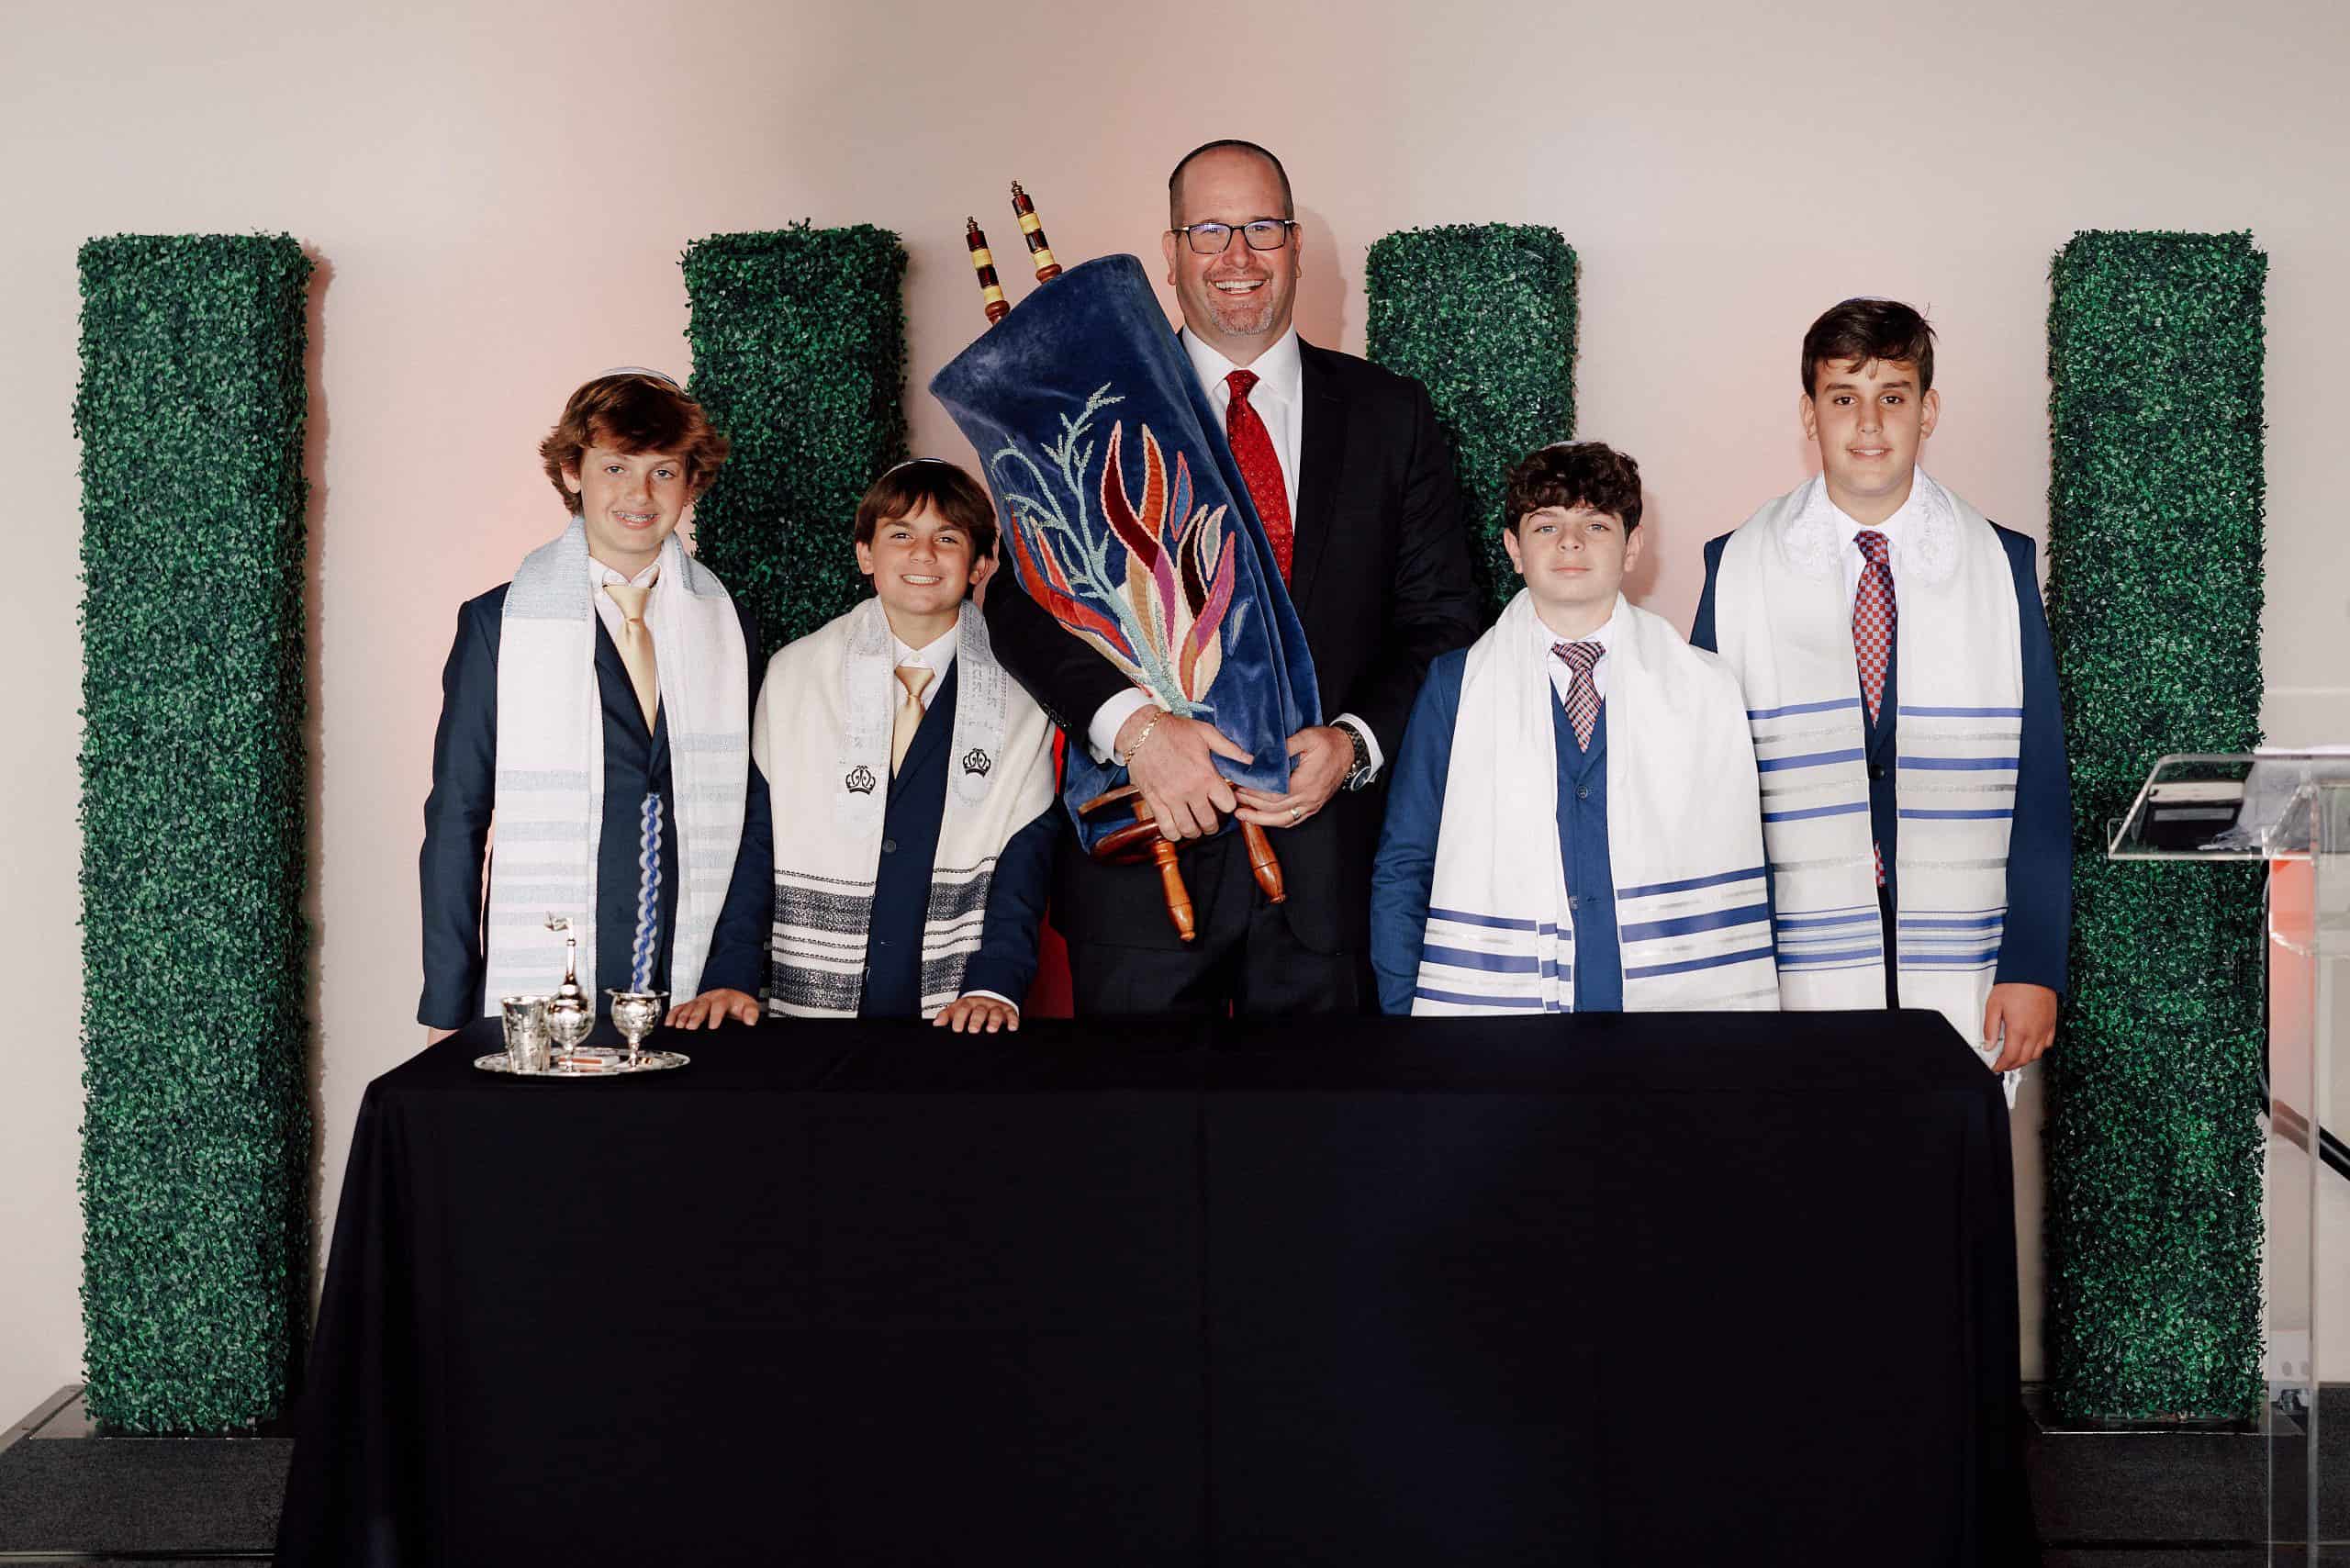 Rabbi Jason Miller